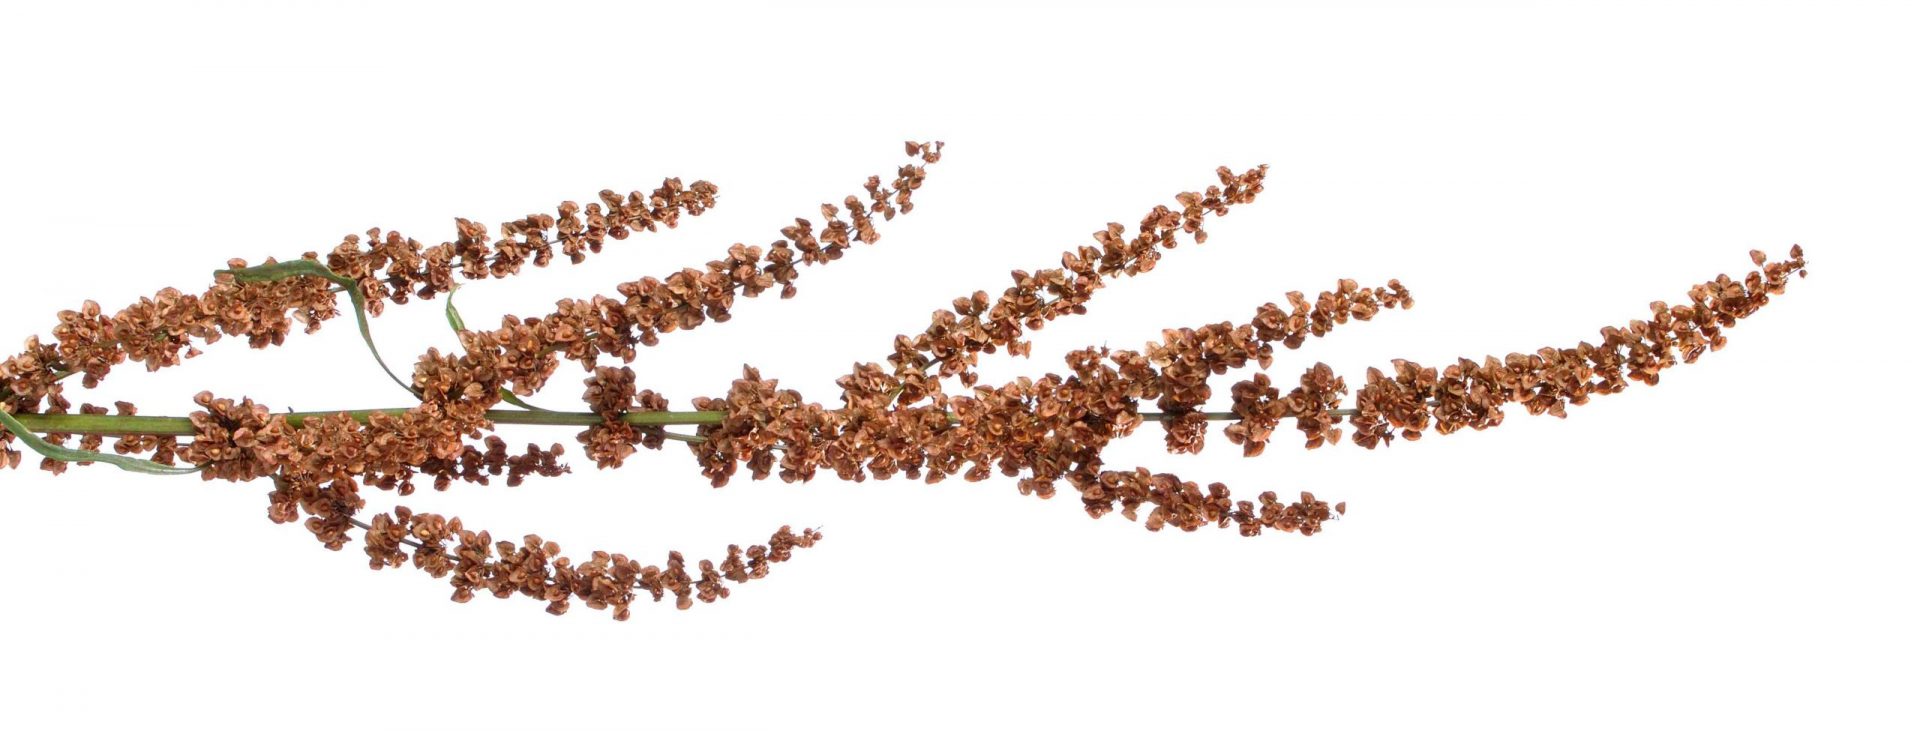 Muelle rizado, Rumex crispus, espiga floral con semillas maduras